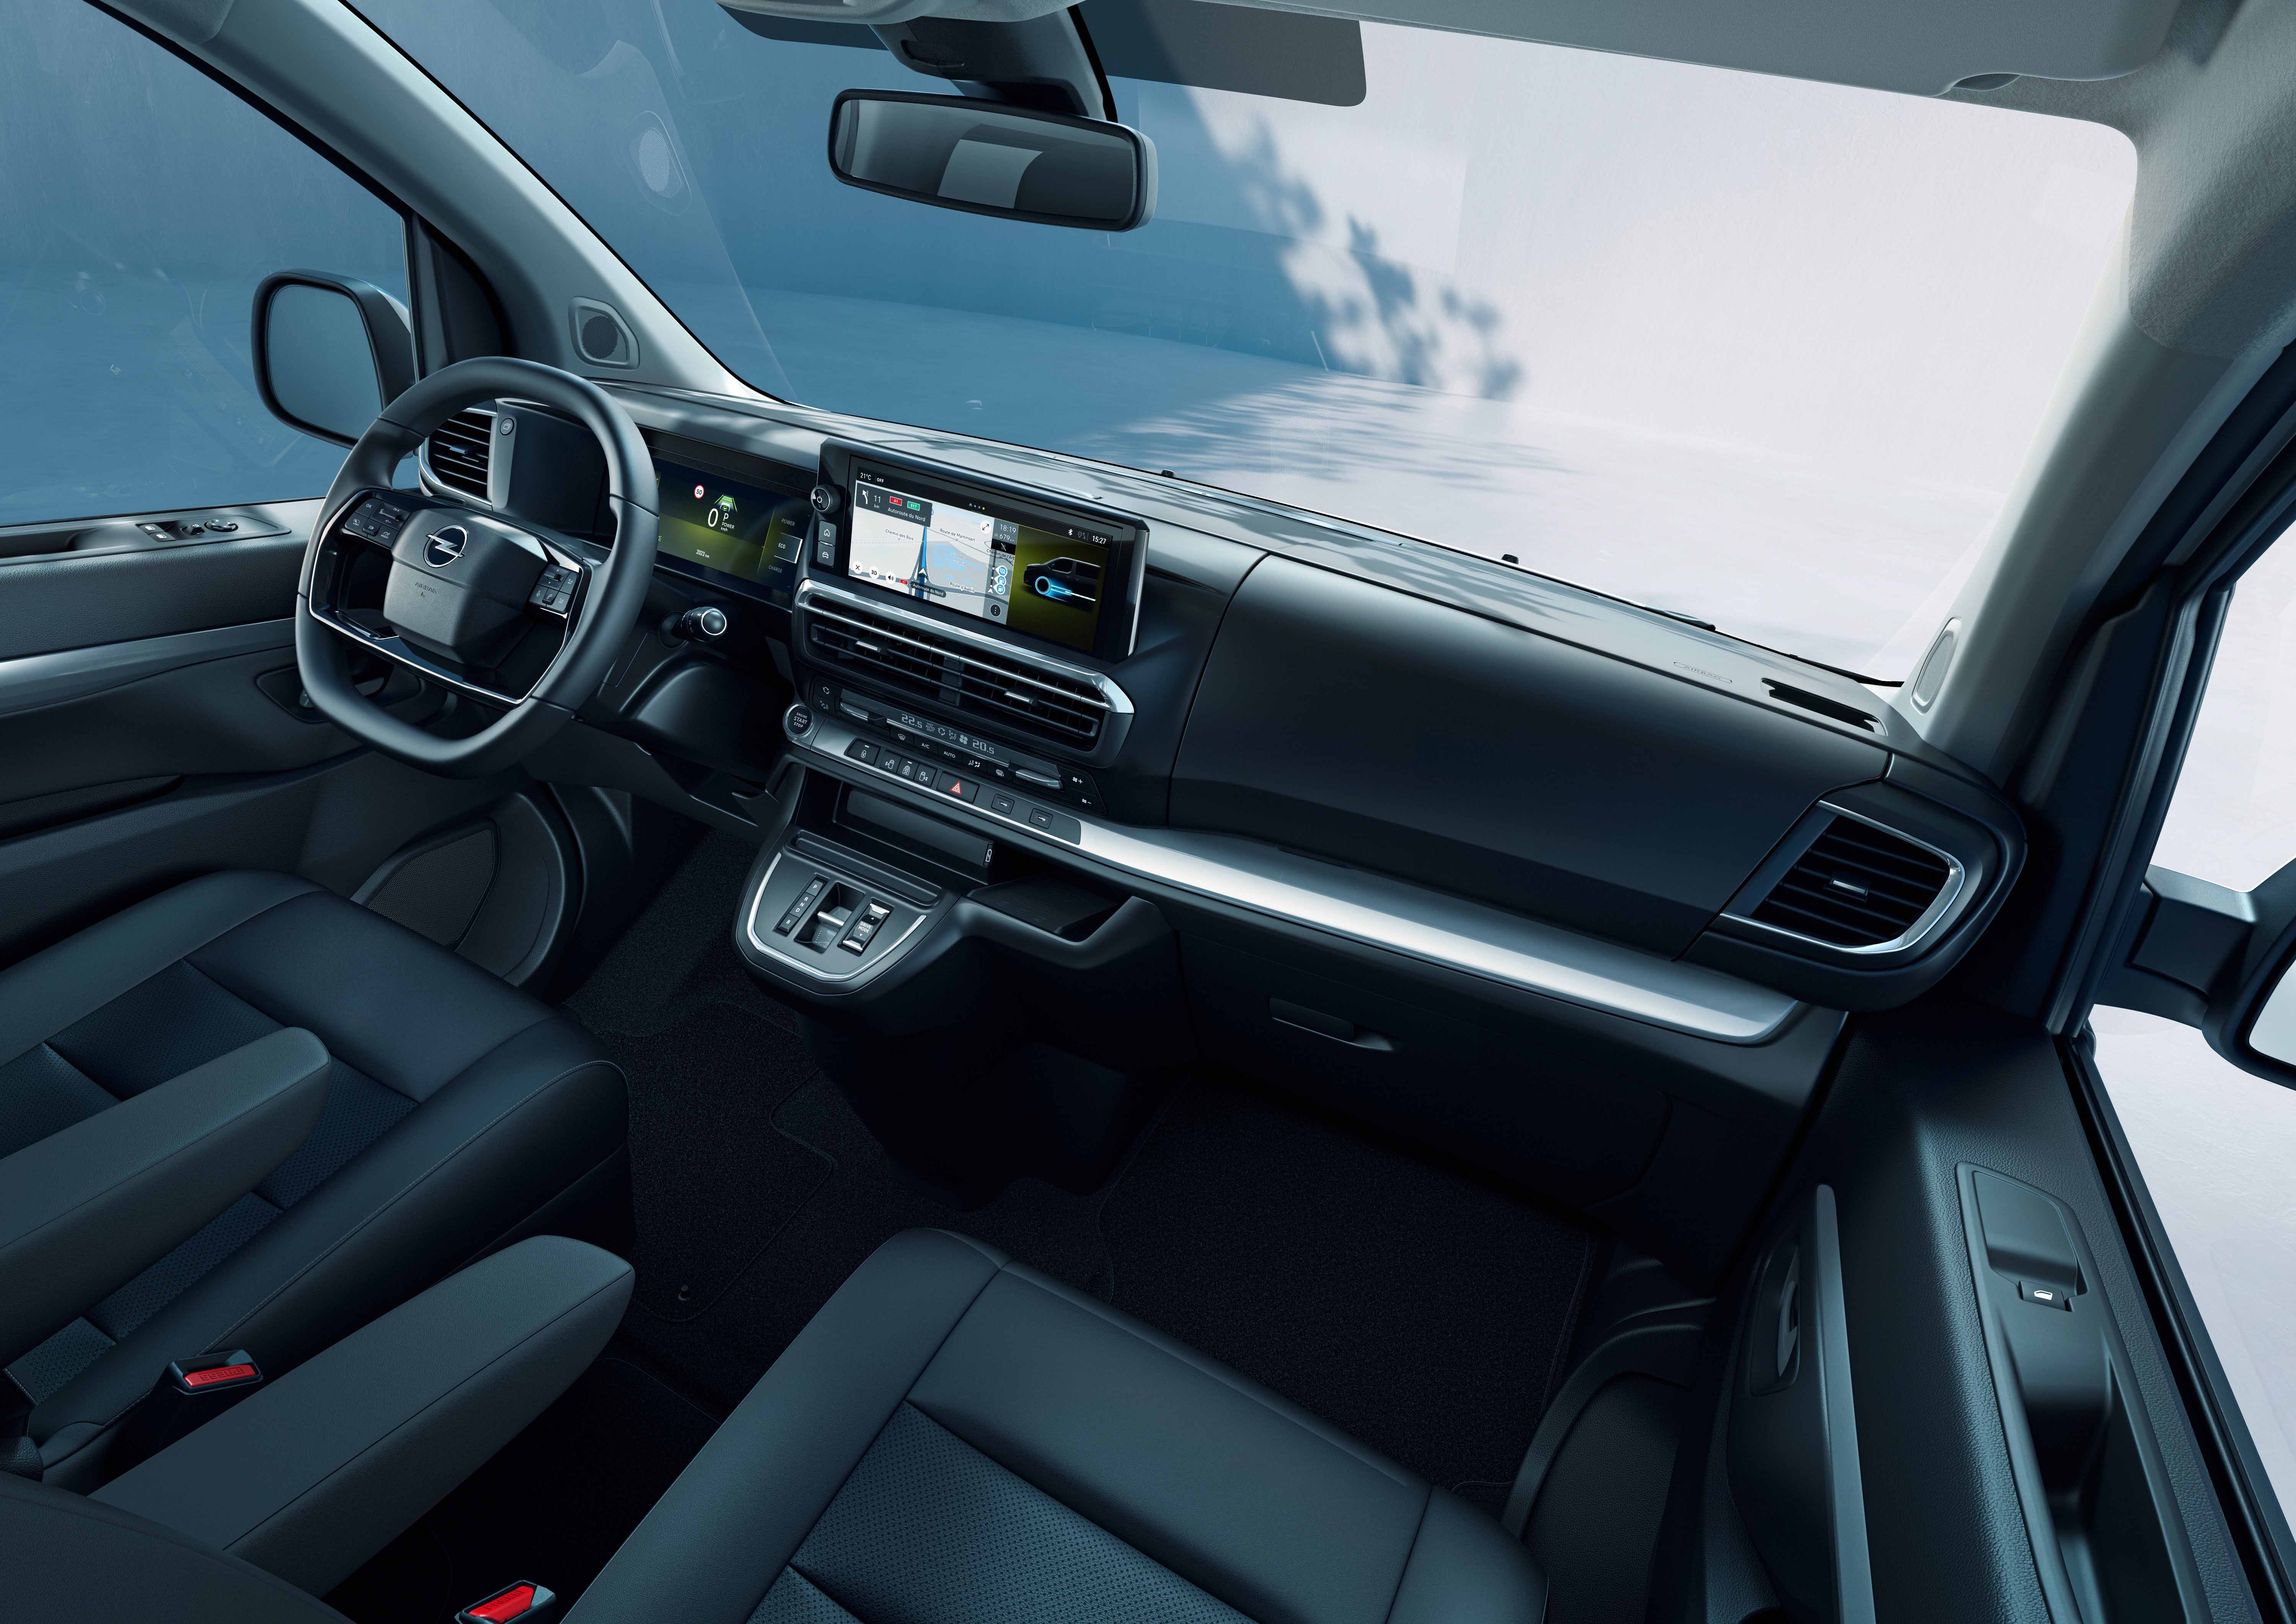 Yeni Opel Combo Elektrik ve Zafira Elektrik tanıtıldı